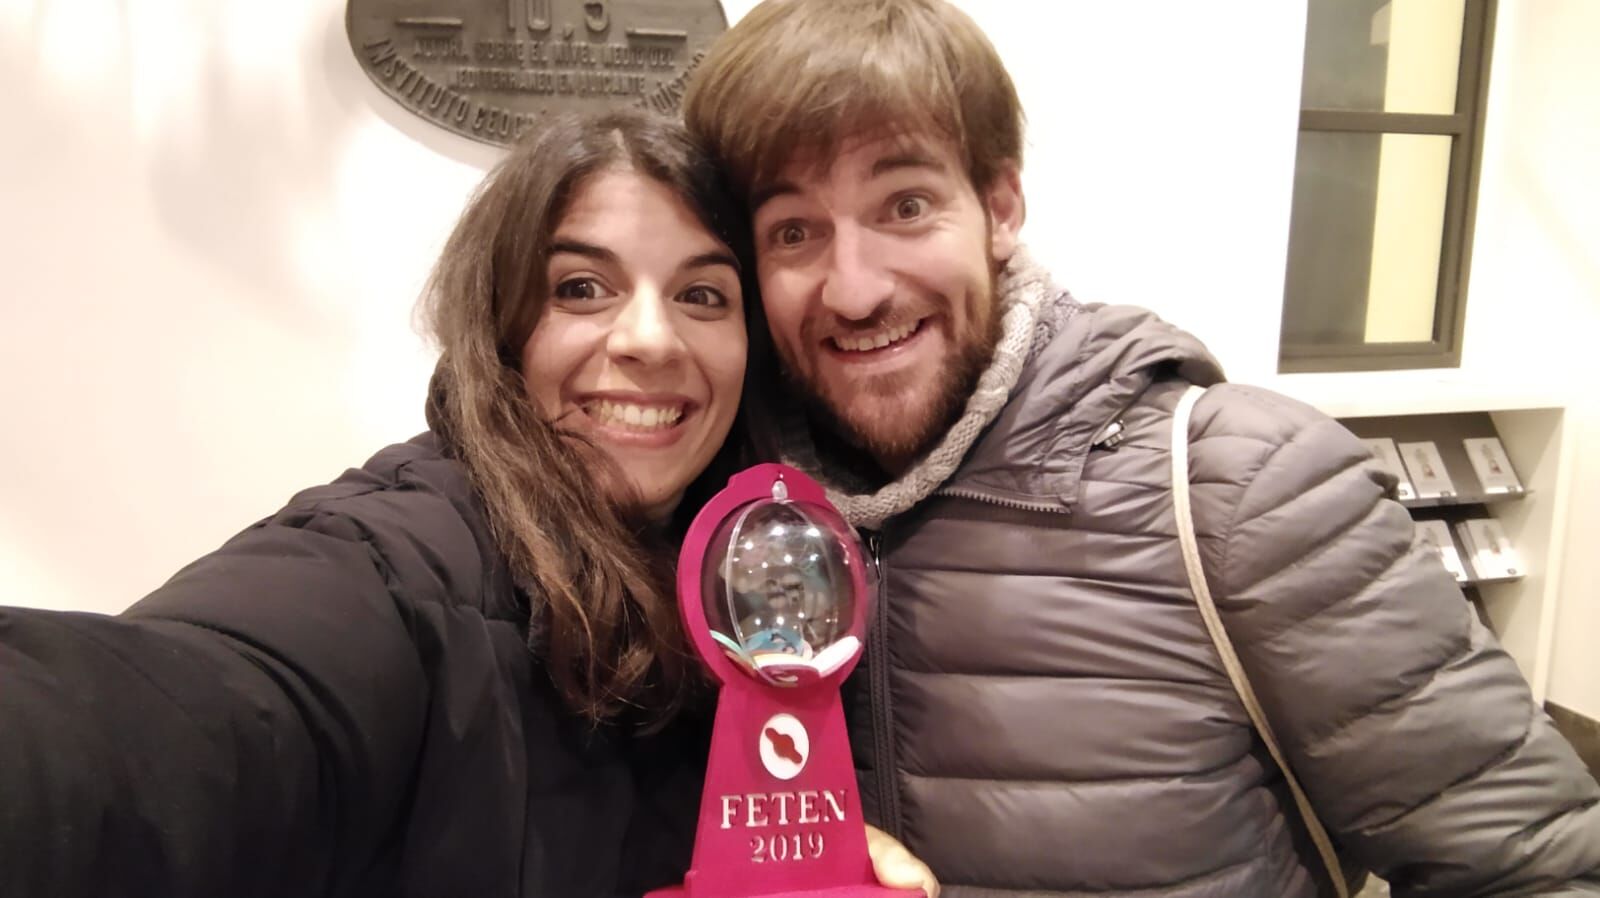 FETEN 2019 premia a la producción del Teatre Escalante “YOLO”